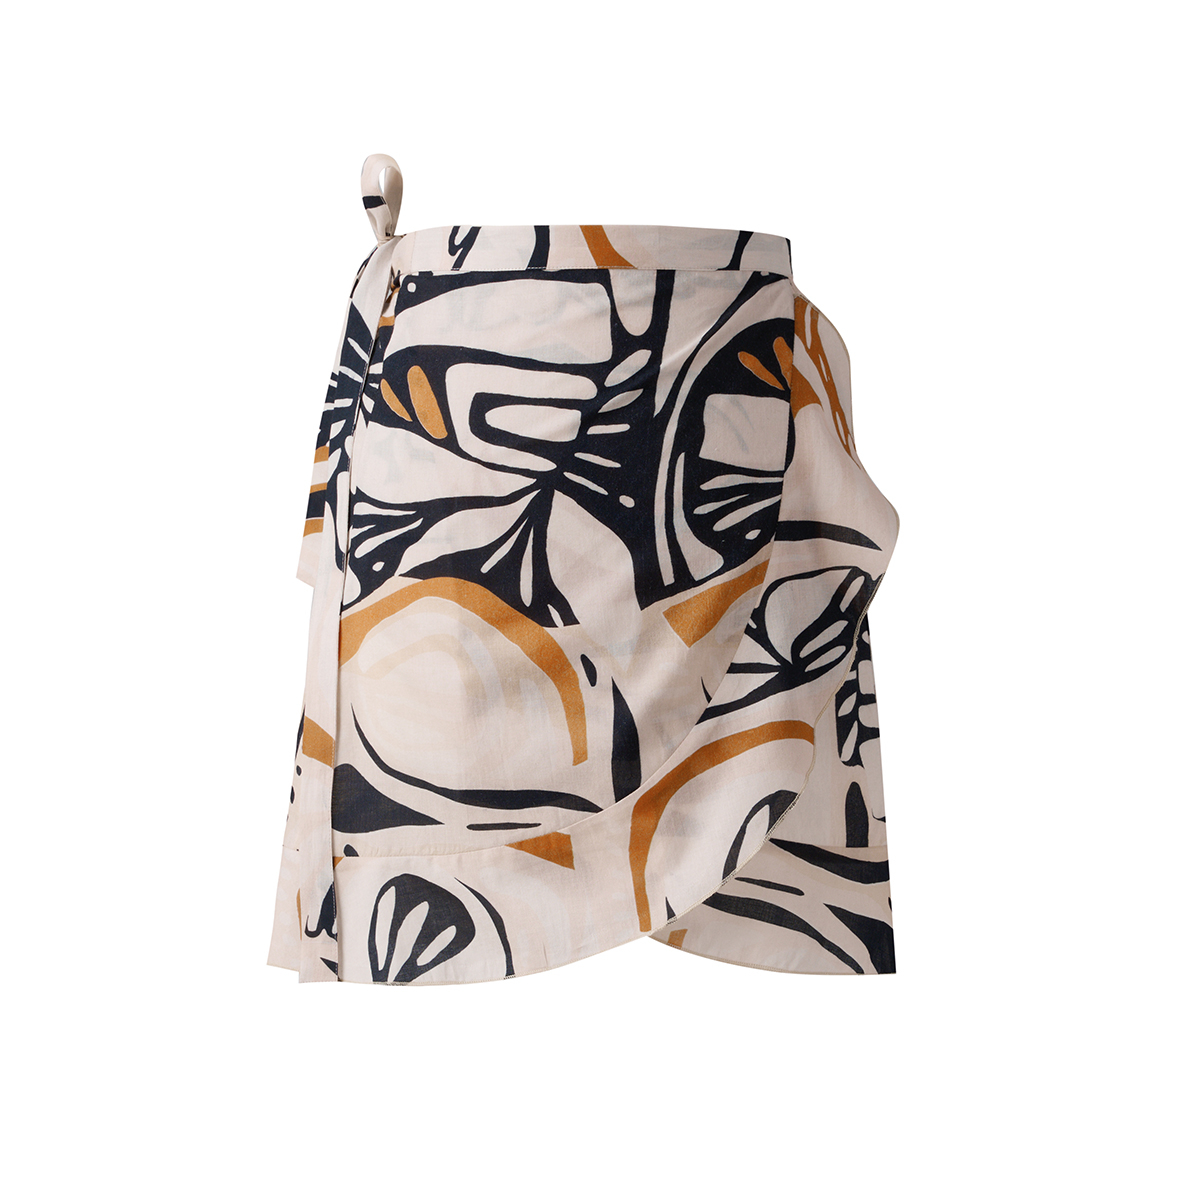 Παρεό – Φούστα (100×45) Kentia Loft Skirt 242